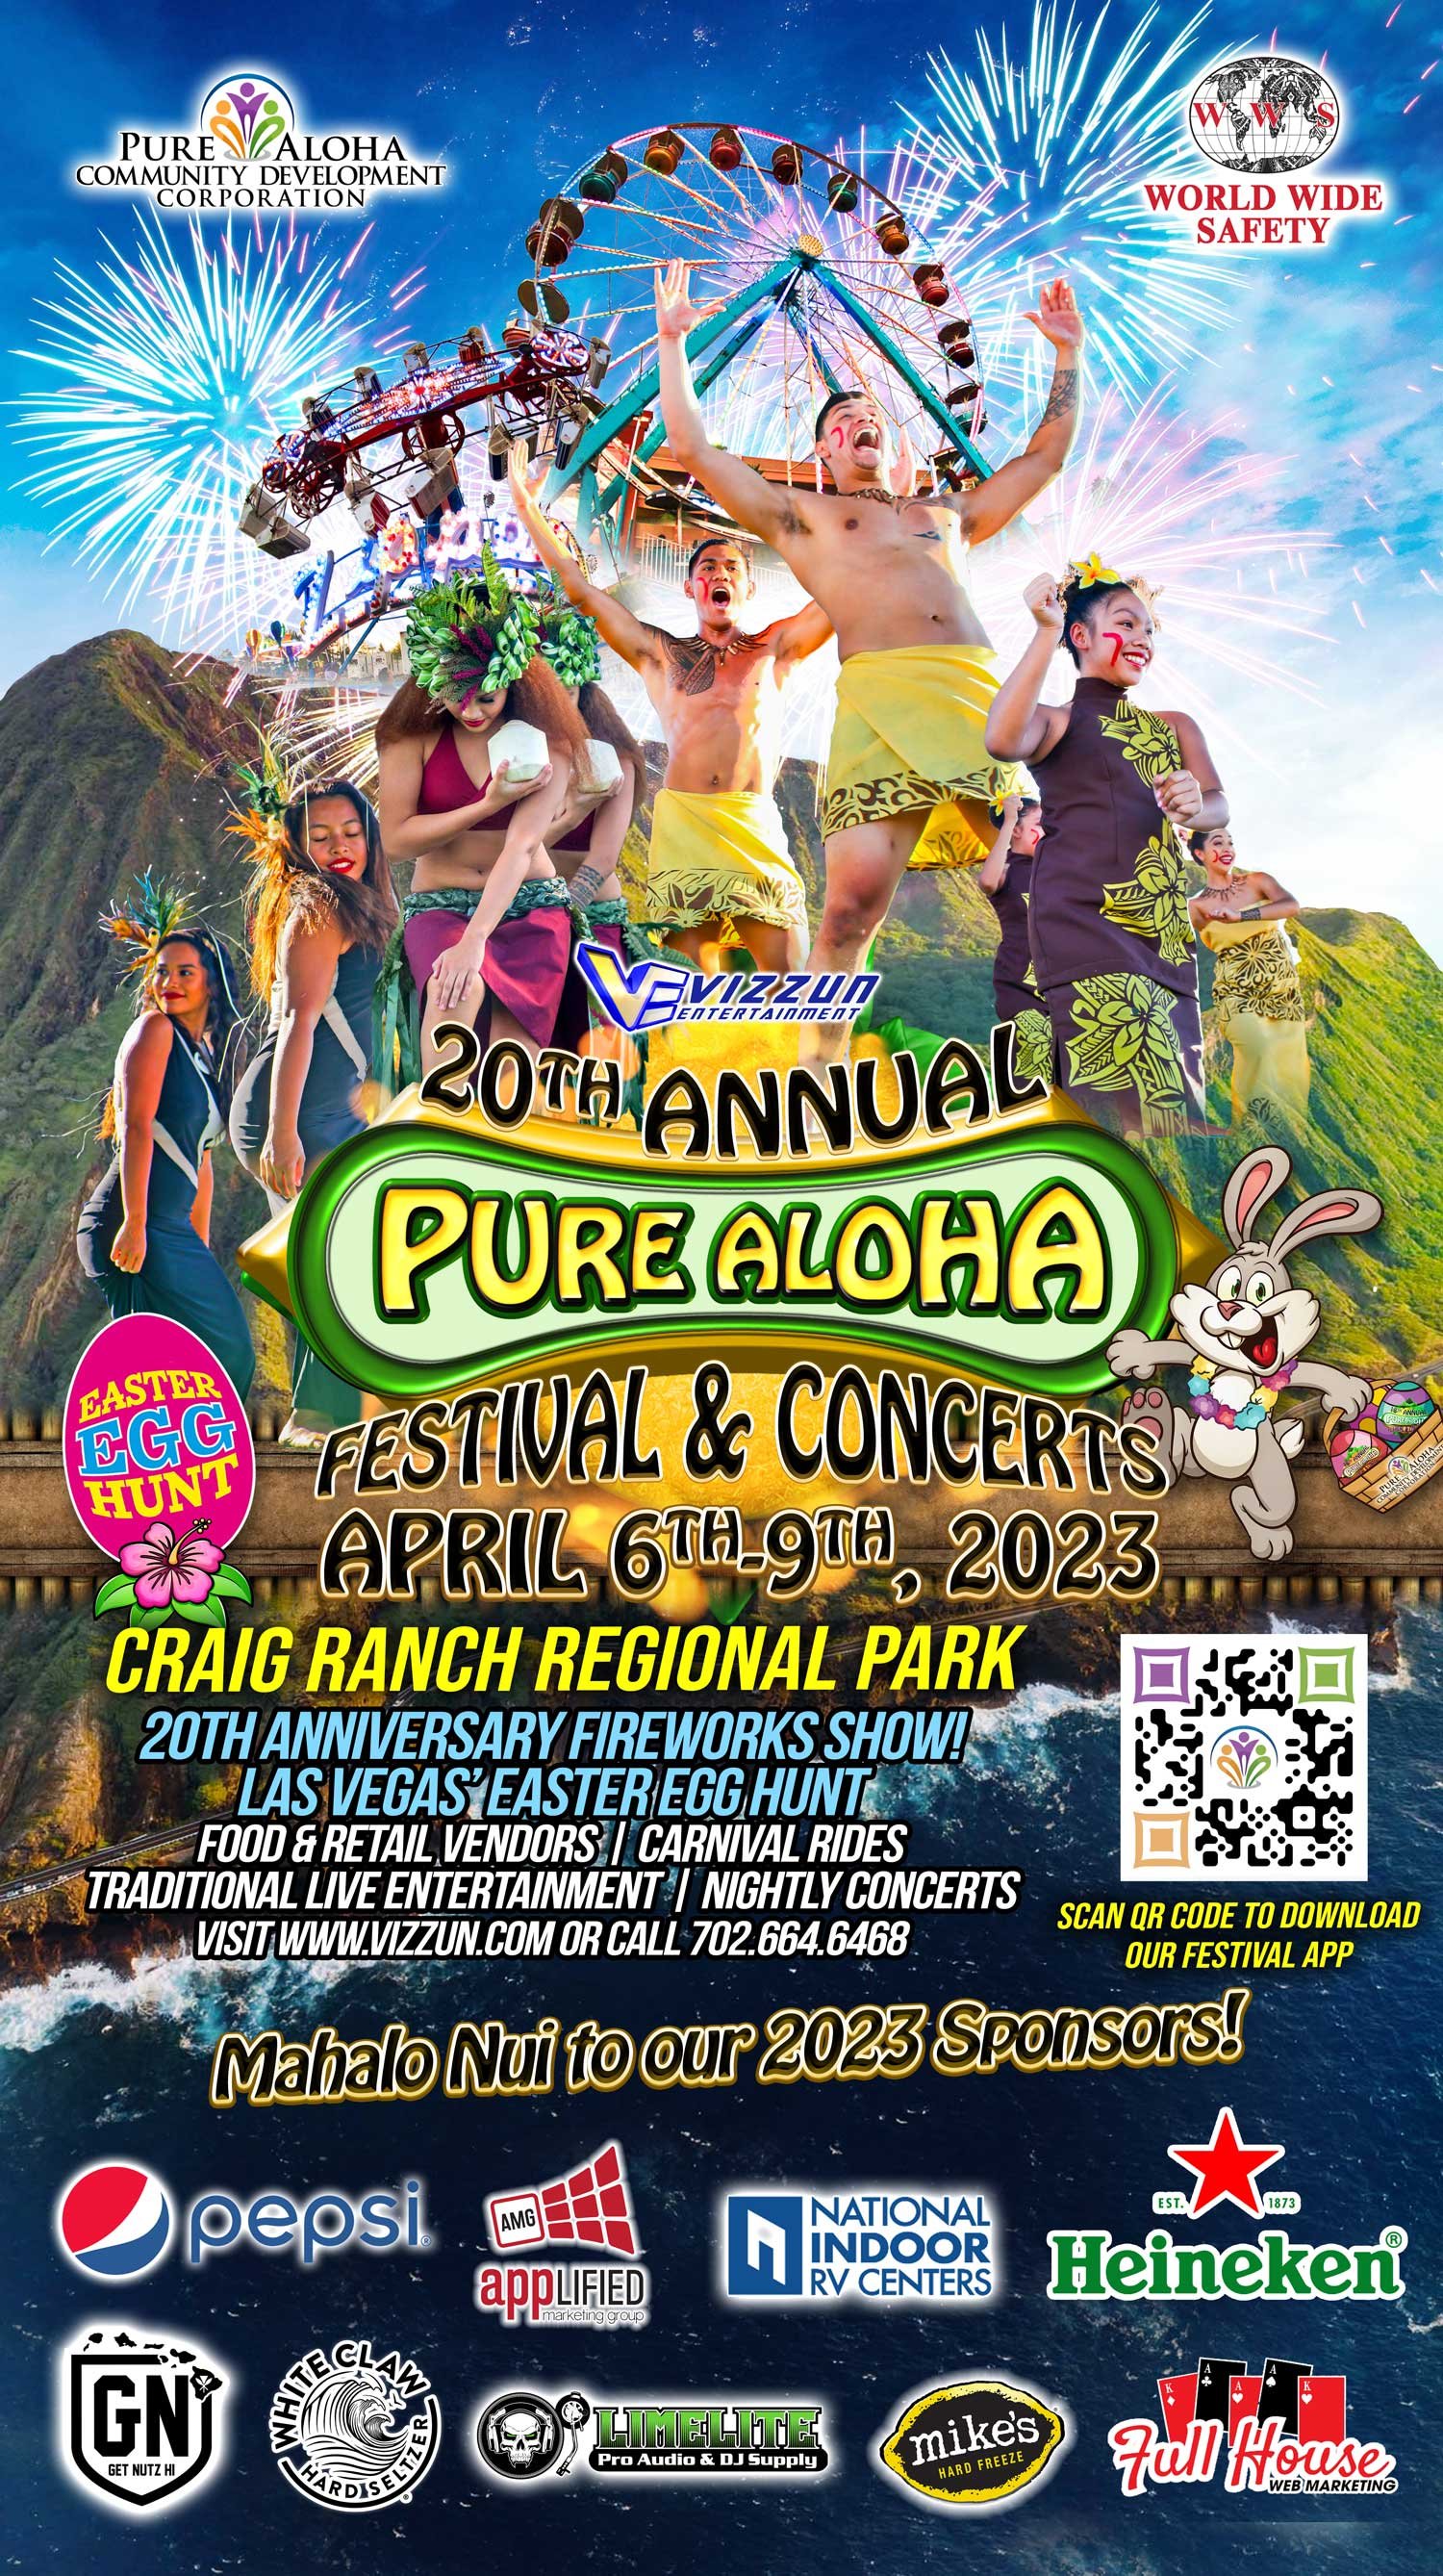 20th Annual Pure Aloha Festival & Concerts — Pure Aloha Festival